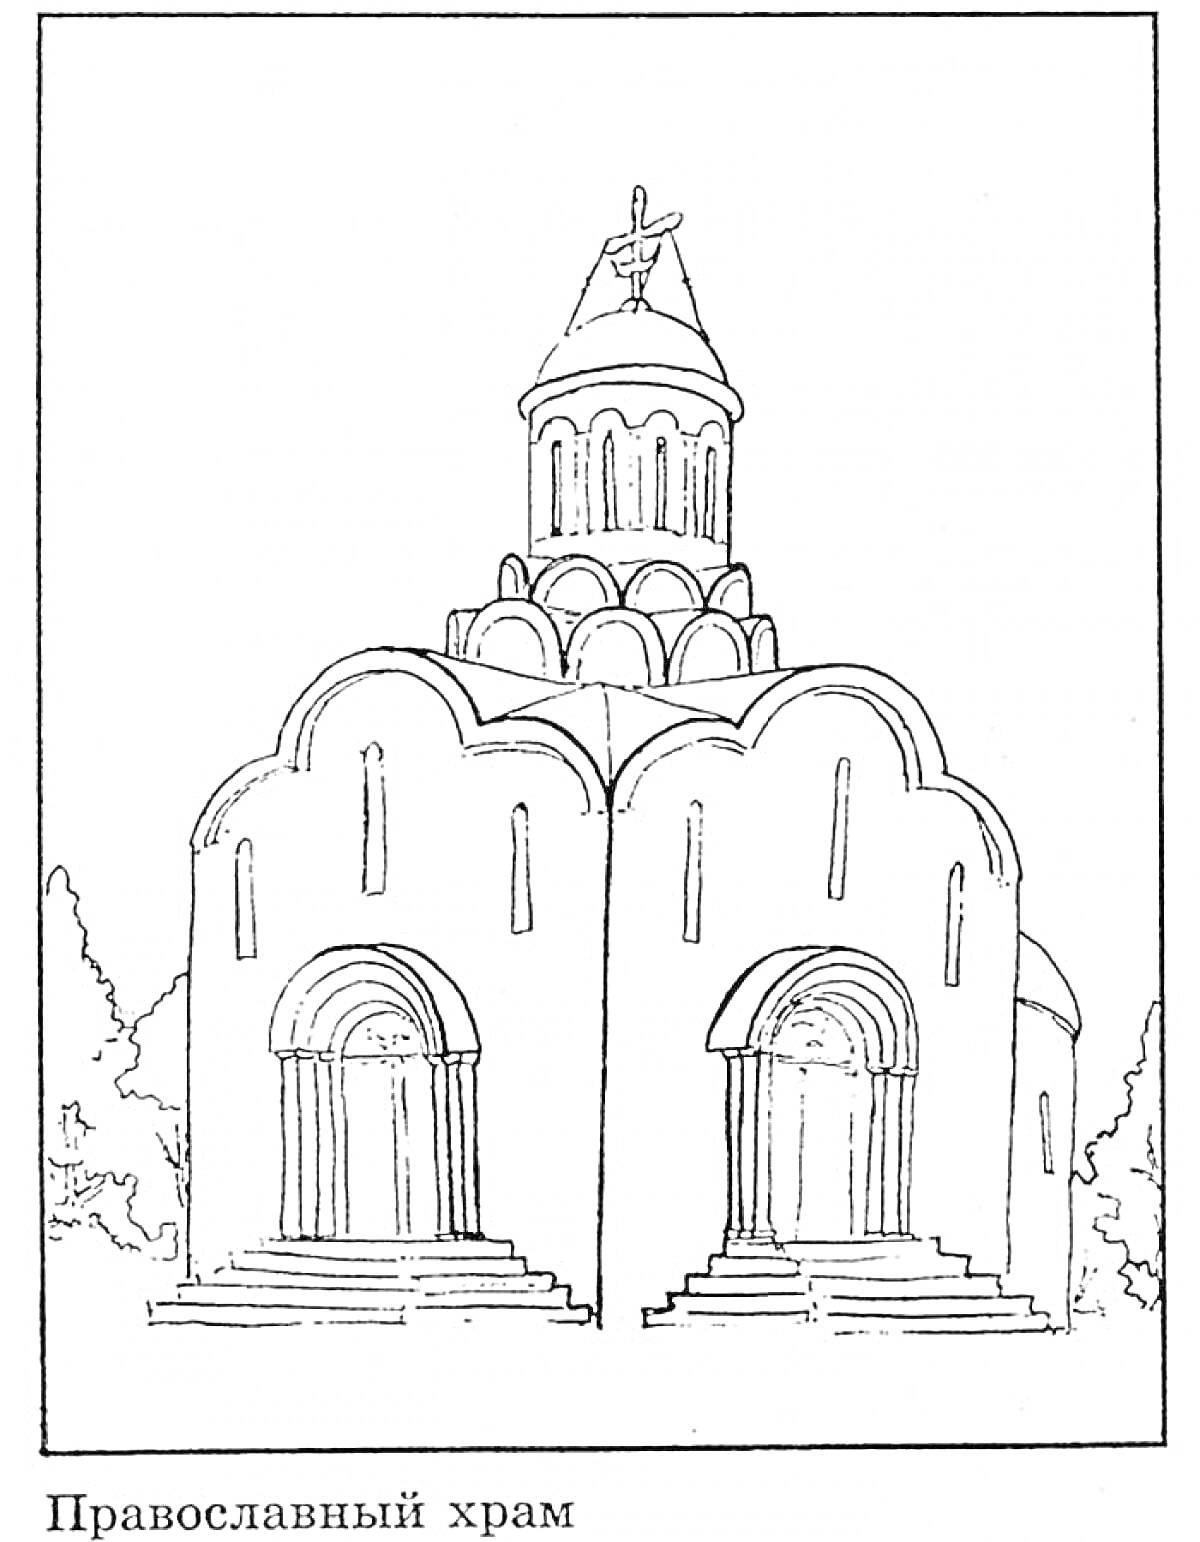 Раскраска Православный храм с двумя арками и куполом, окруженный деревьями